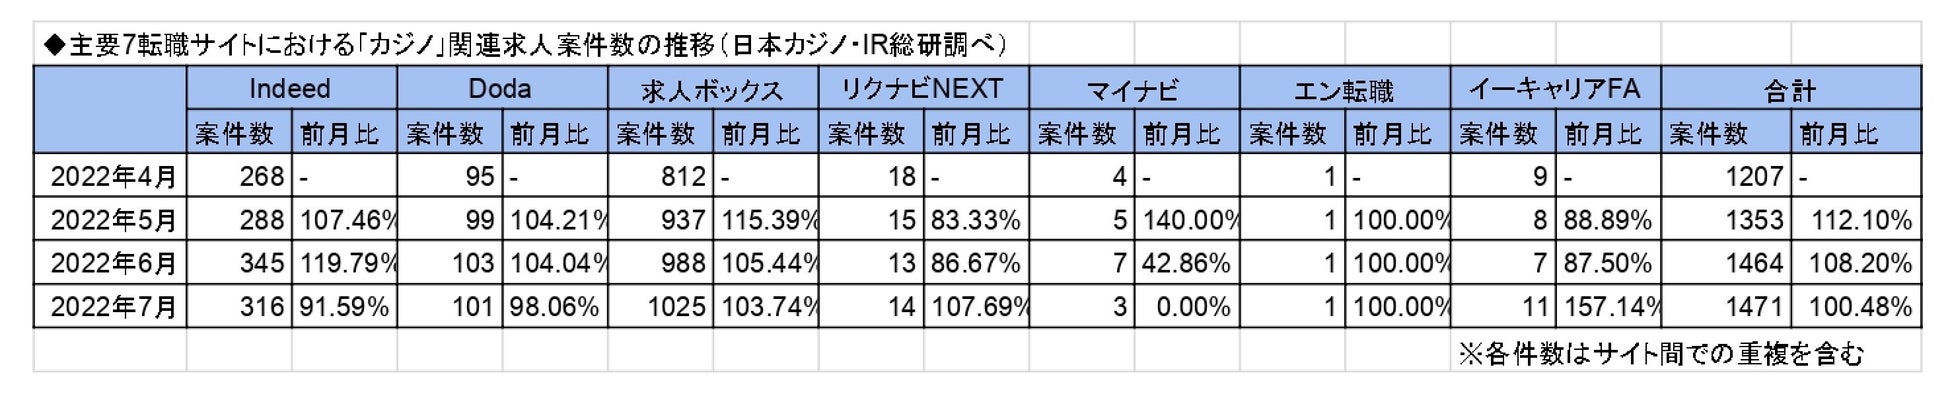 「カジノ」「統合型リゾート」に関する求人の最新調査(2022年7月版)を公表-日本カジノ・IR